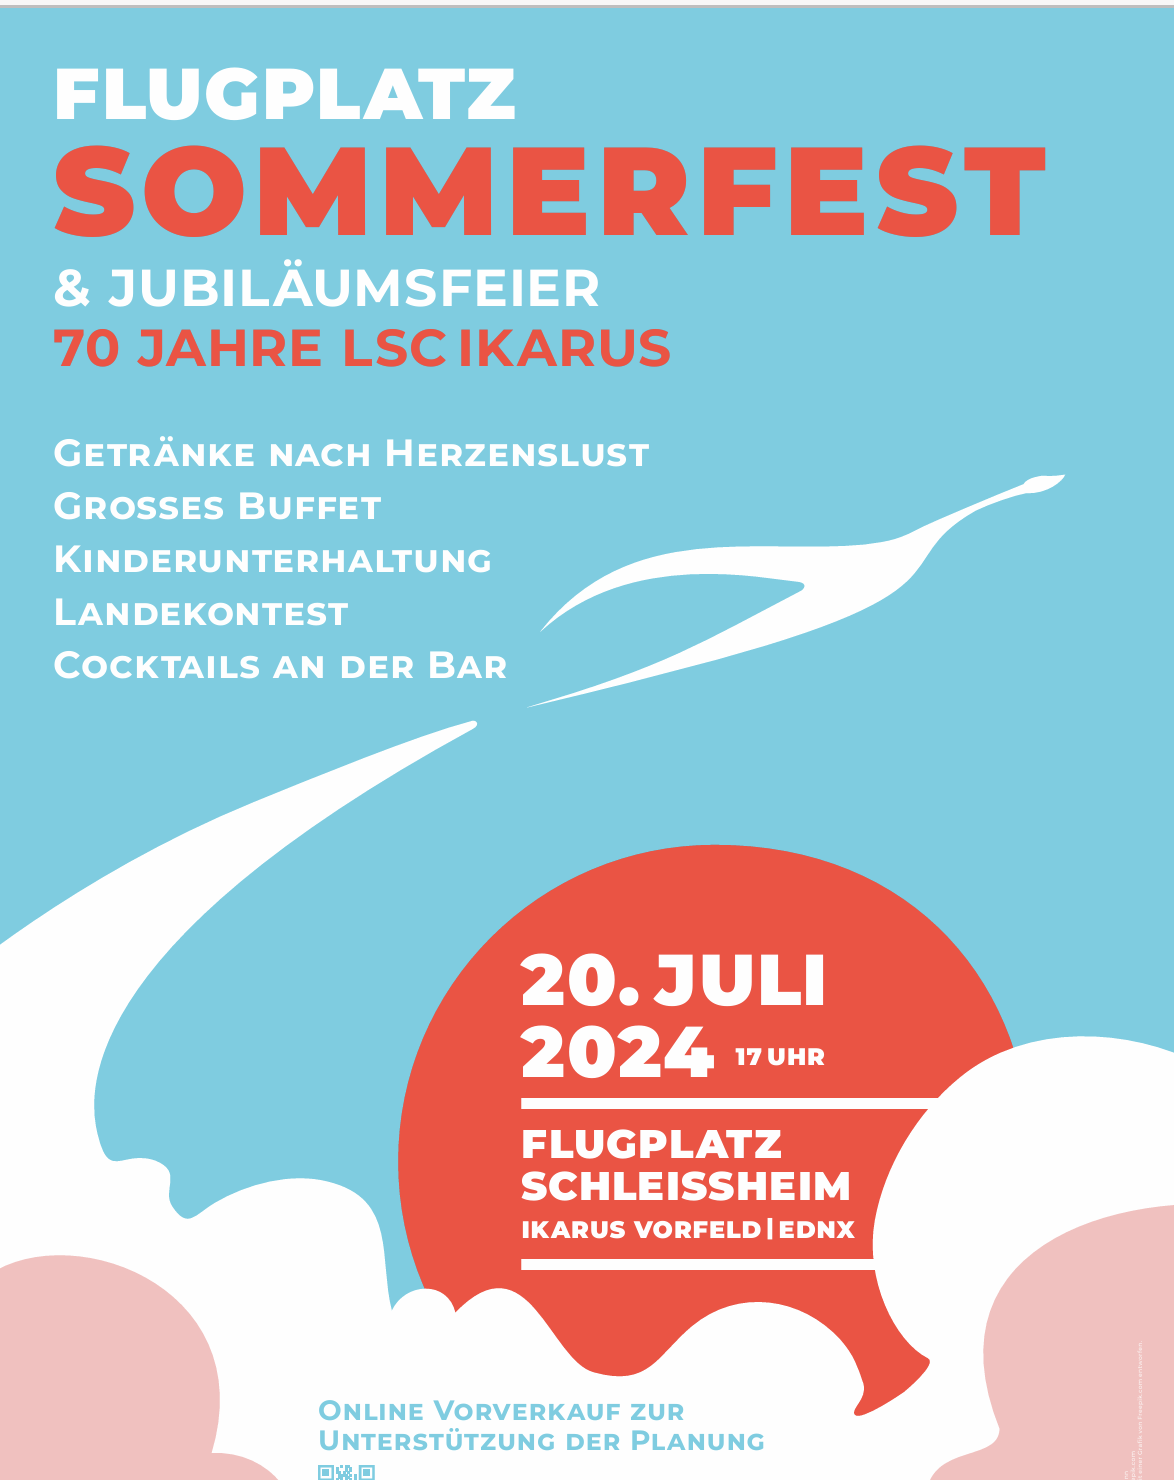 Flugplatz Sommerfest & Jubiläumsfeier 70 Jahre LSC Ikarus